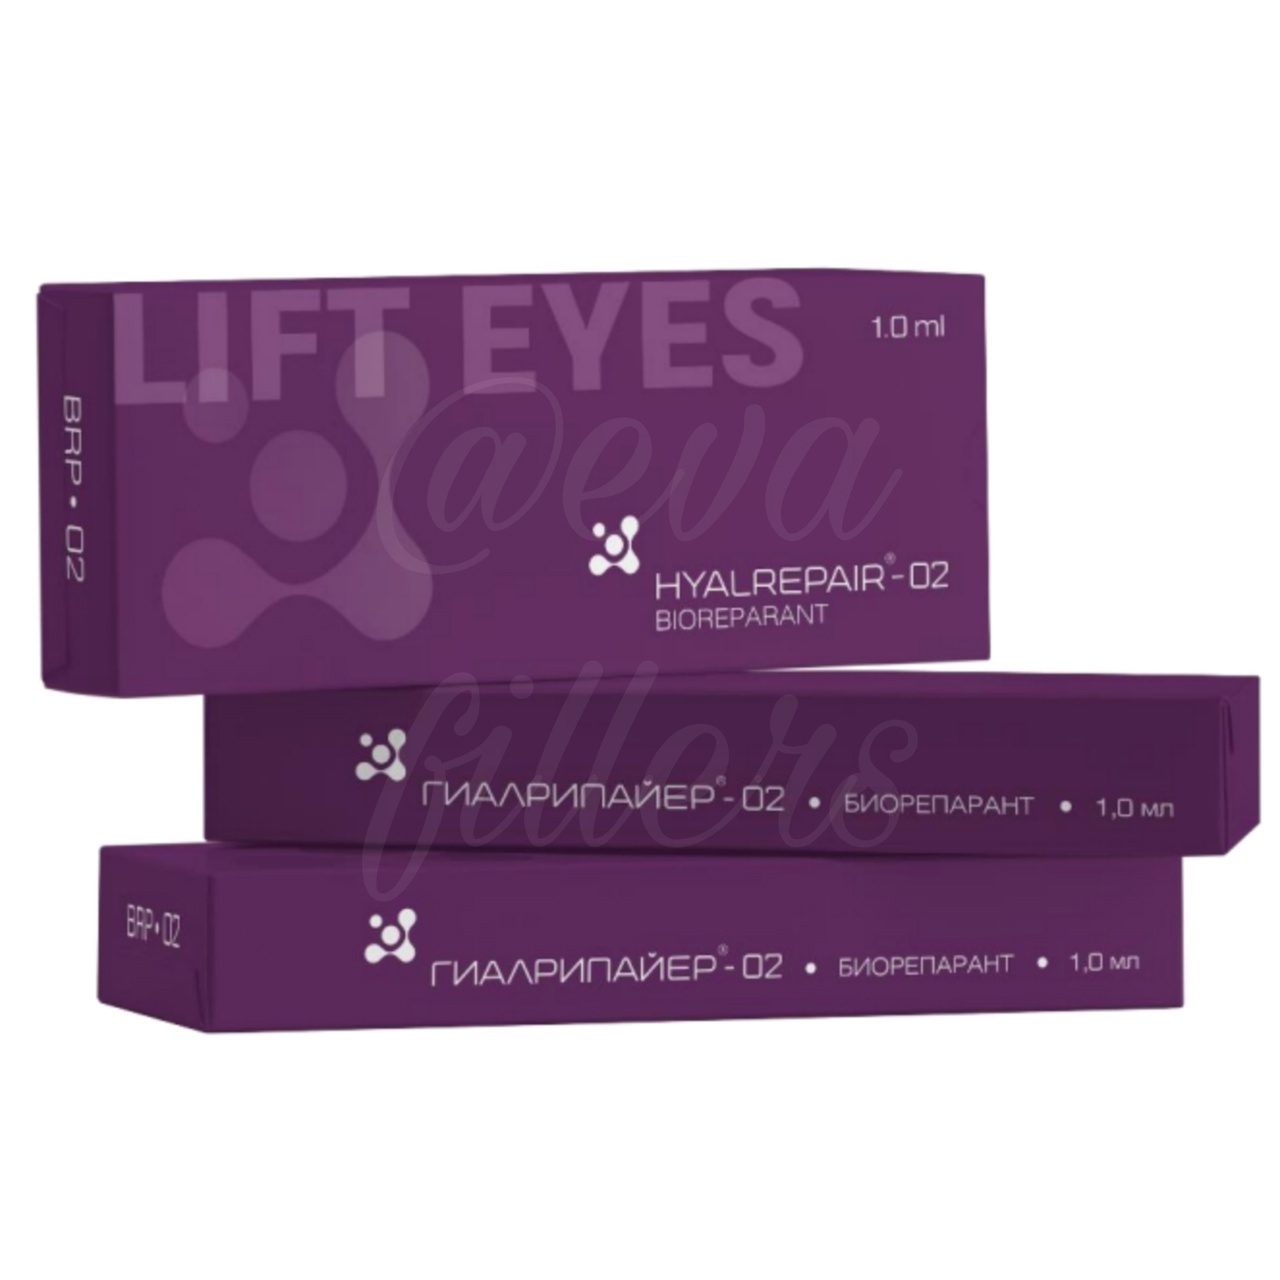 Биоревитализация препаратом Hyalrepair Lift Eyes (1 мл): зона вокруг глаз